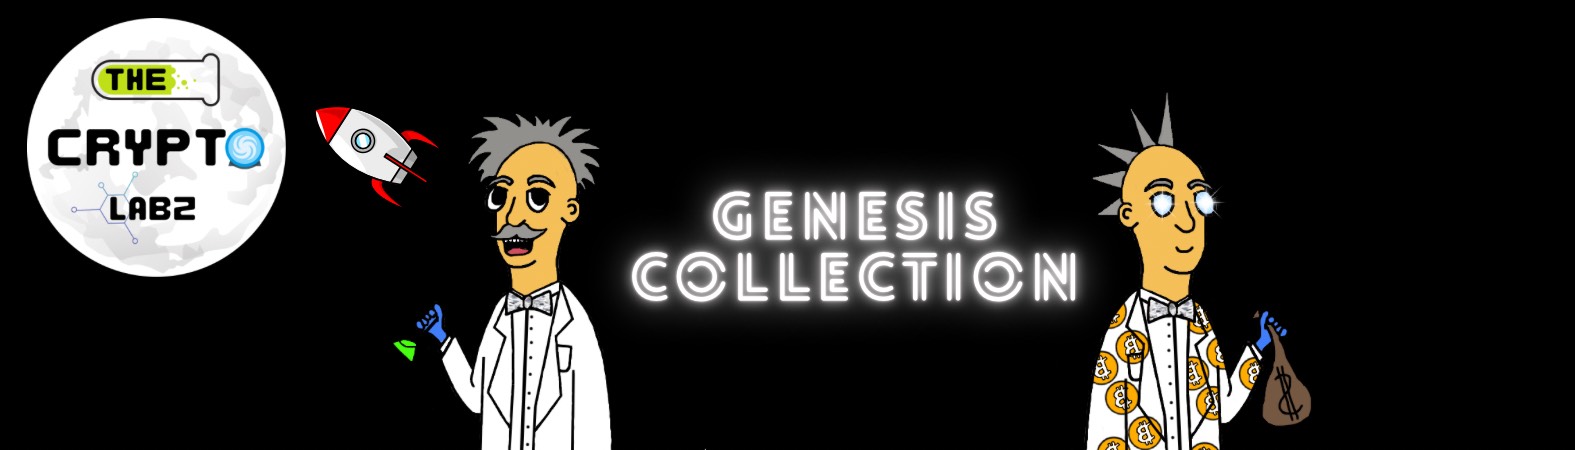 TheCryptoLabz - Genesis Collection